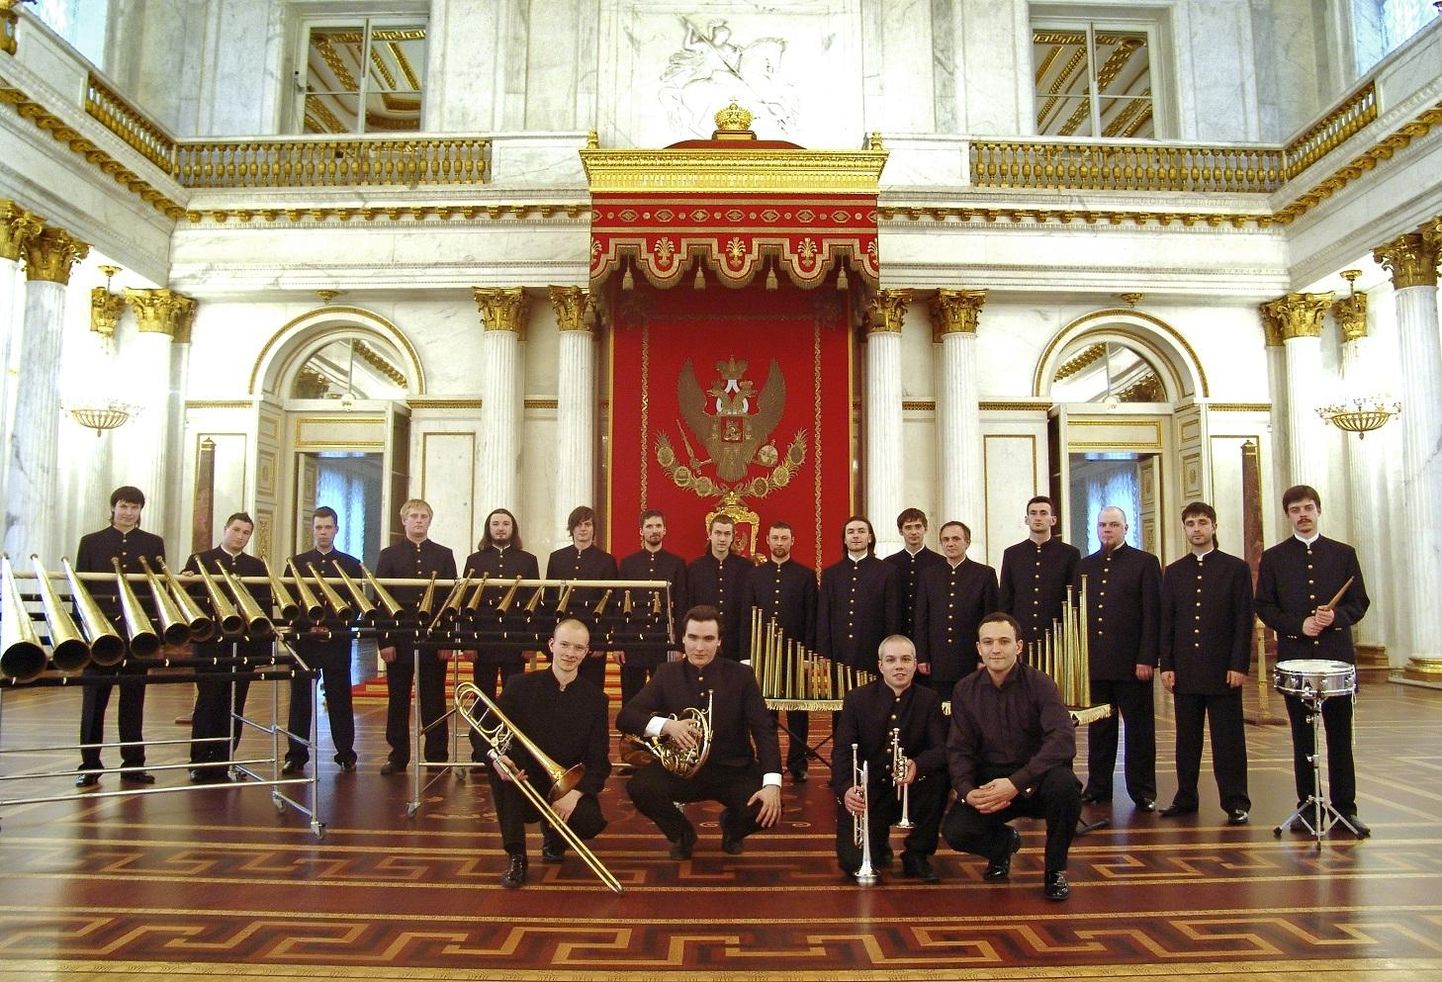 Tänapäevase Vene sarveorkestri, mille juured ulatuvad keisrinna Jelizaveta Petrovna õukonda, lõi Sergei Poljanitško 2006. aastal. Orkestri käsitsi valmistatud pillikogu on nüüdseks suurenenud 106 sarveni, millel mängib 17 noort vene muusikut.